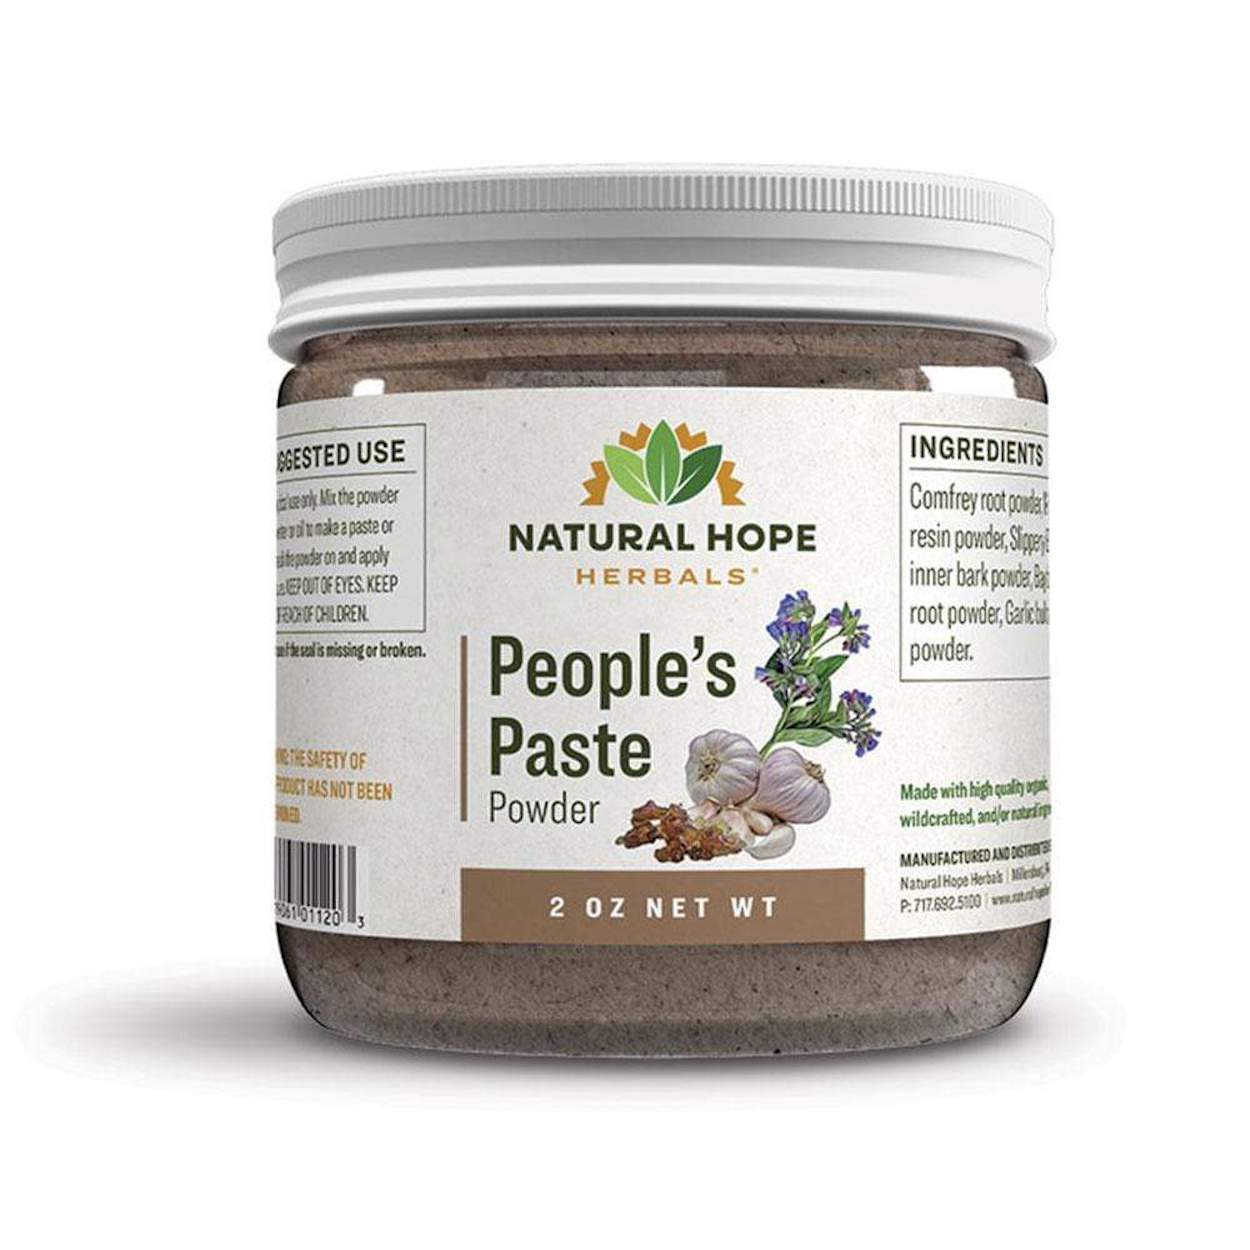 People’s Paste Powder - Natural Hope Herbals